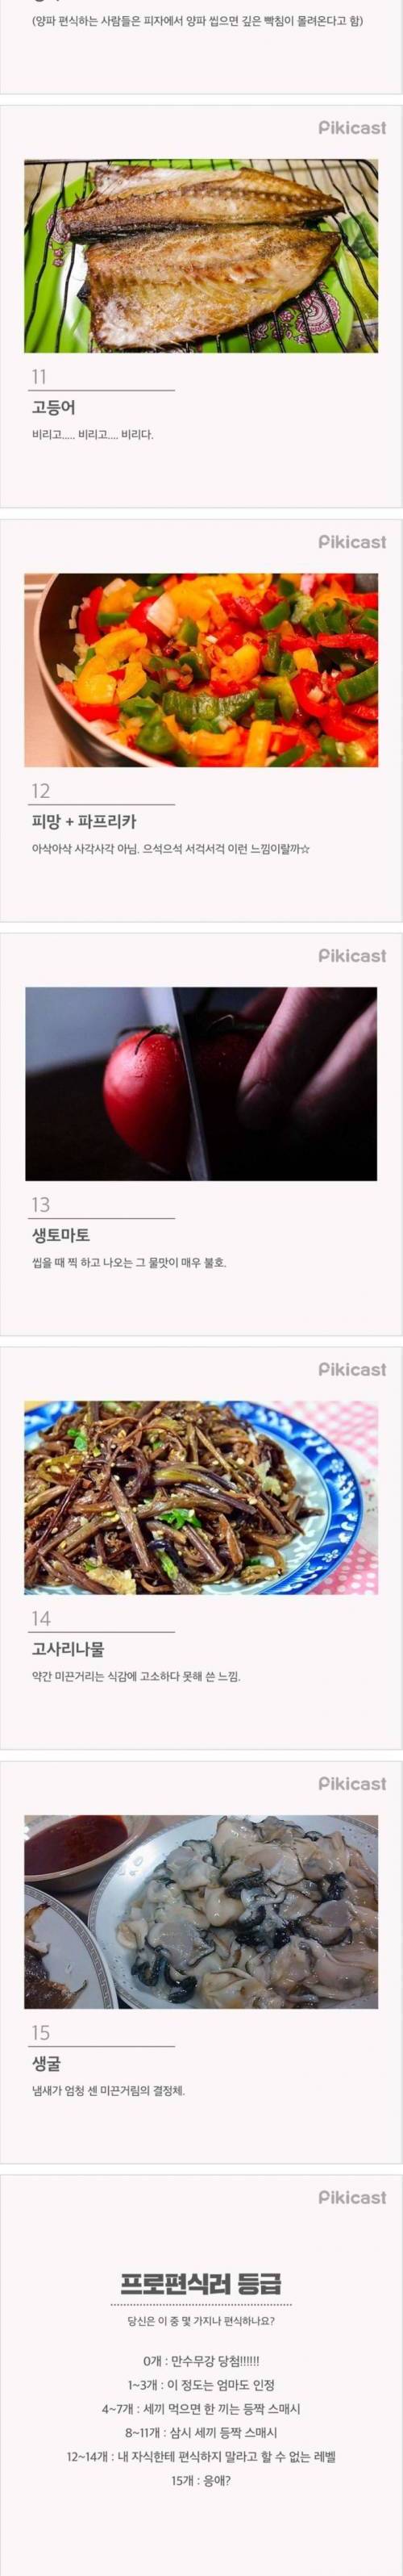 한국인이 가장 많이 편식하는 음식 TOP15